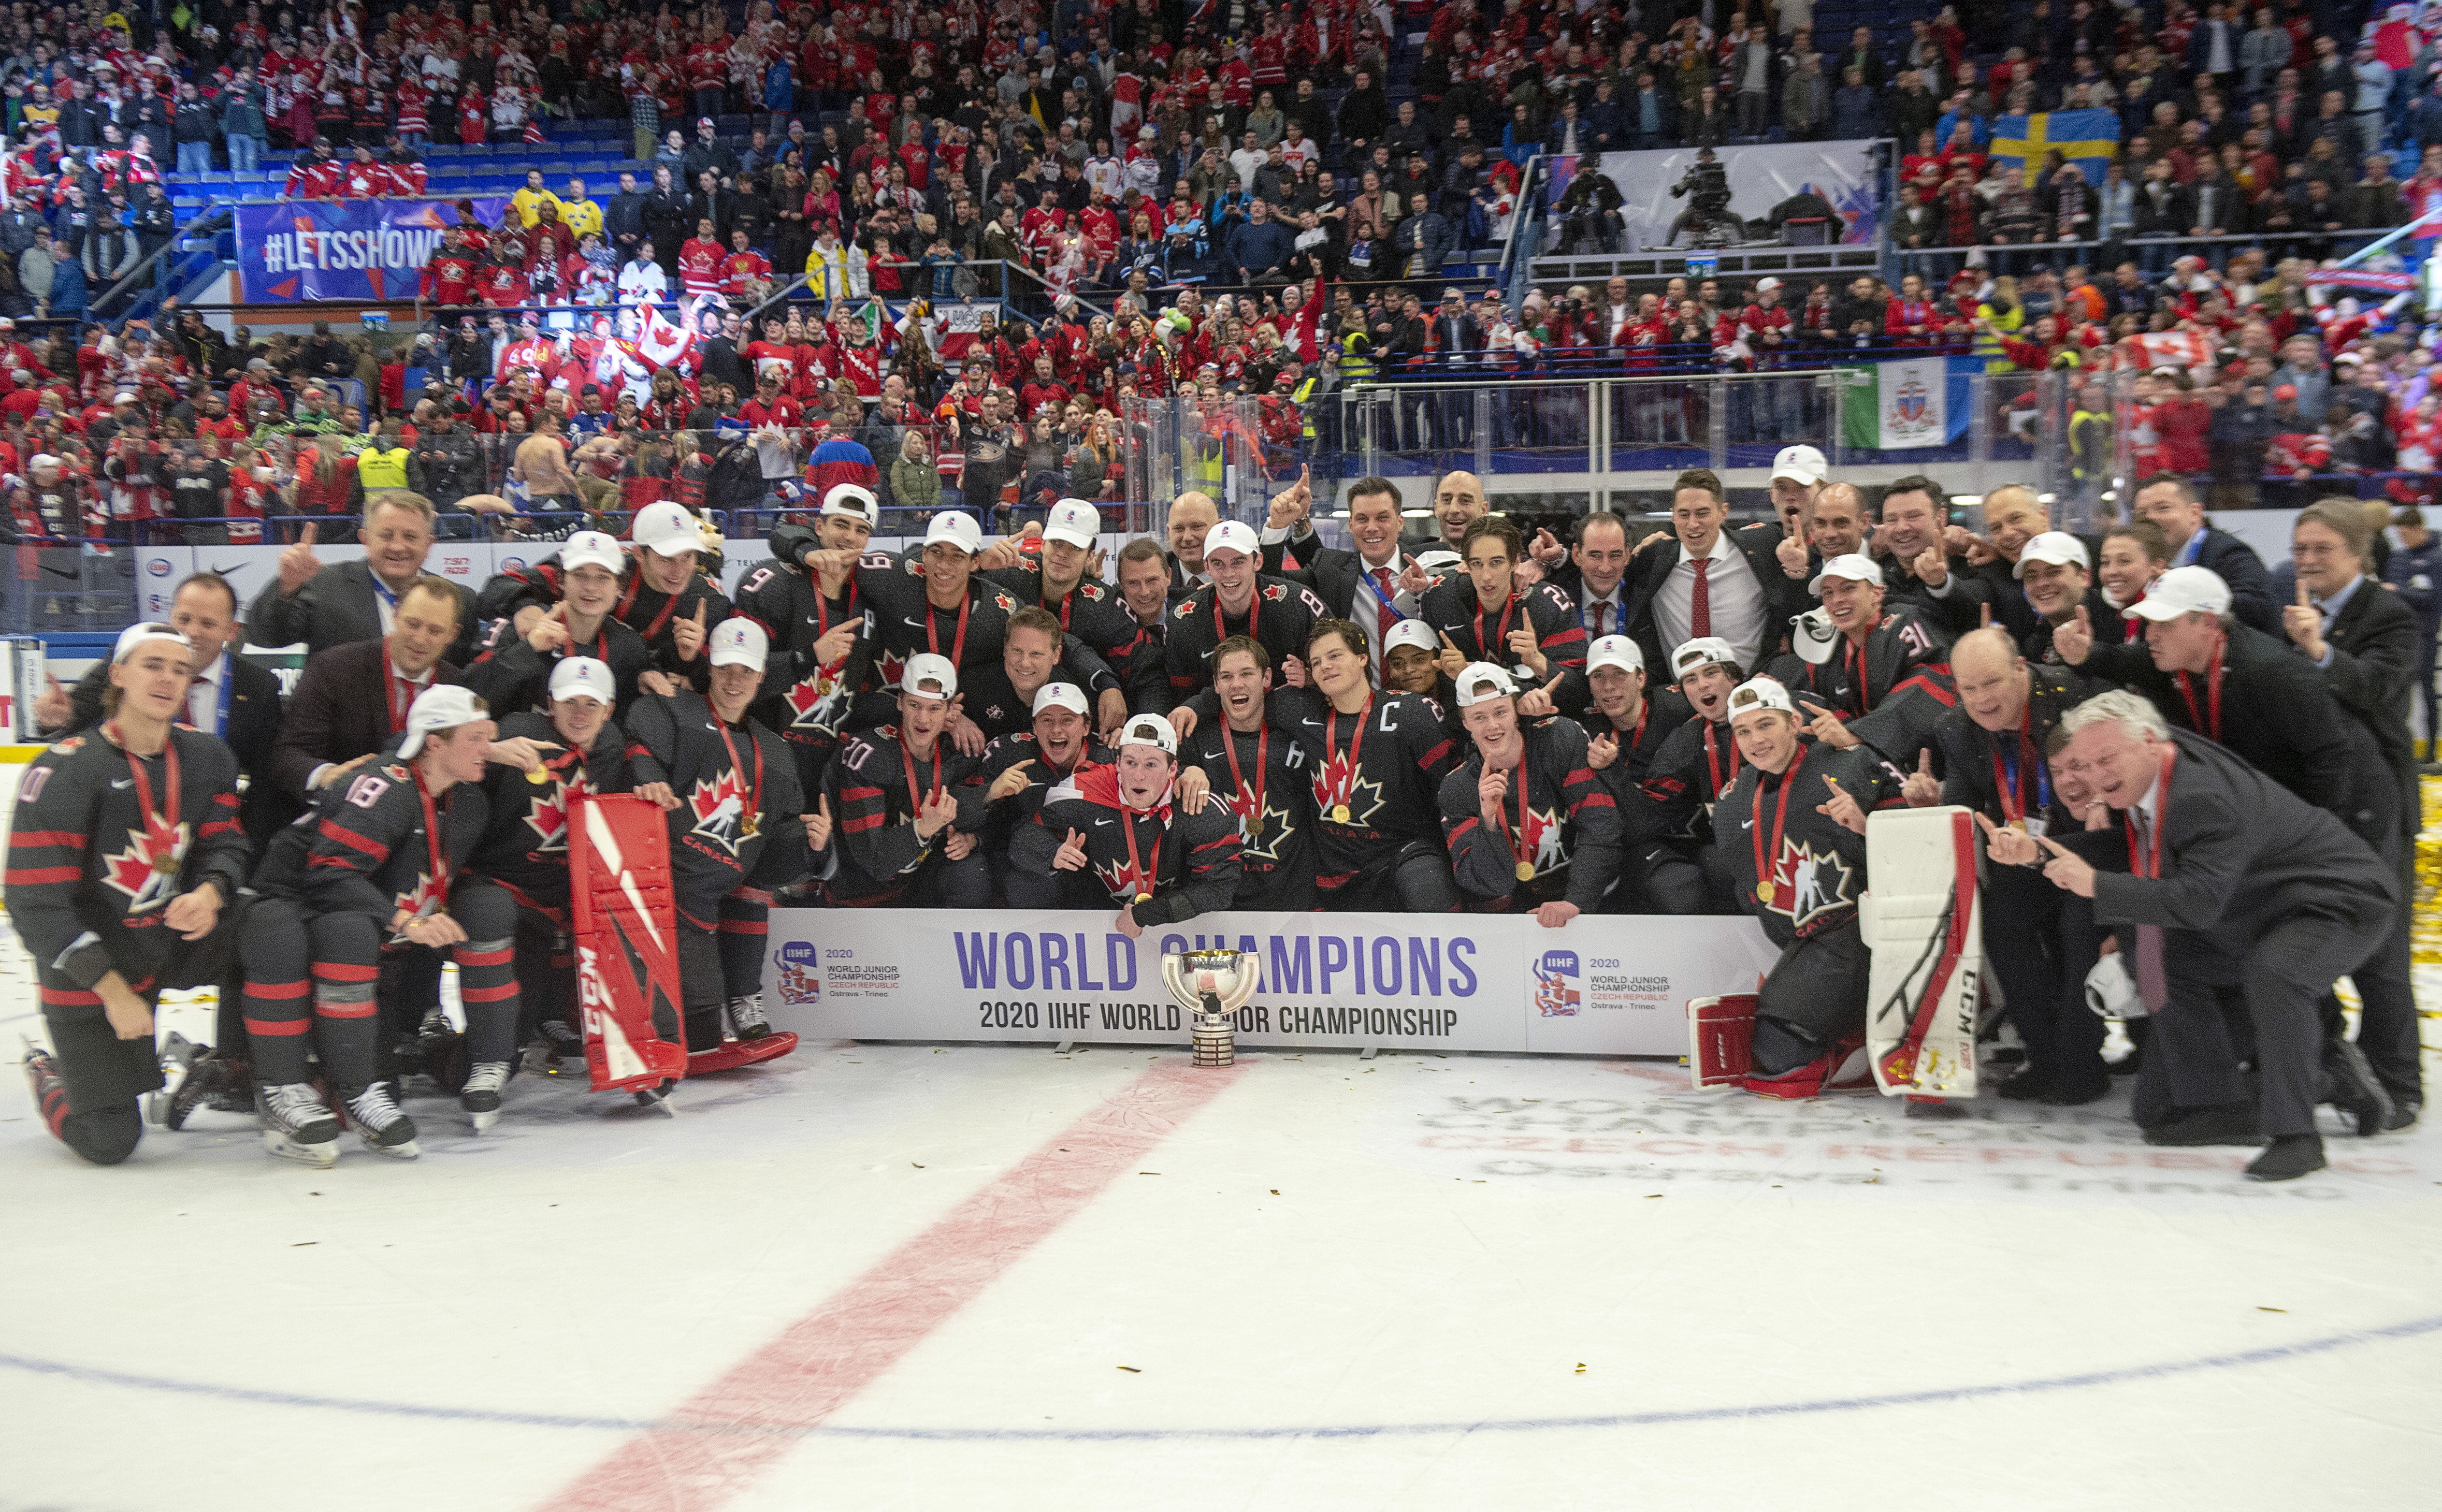 Un groupe de joueurs de hockey pose sur la glace avec la bannière des champions.